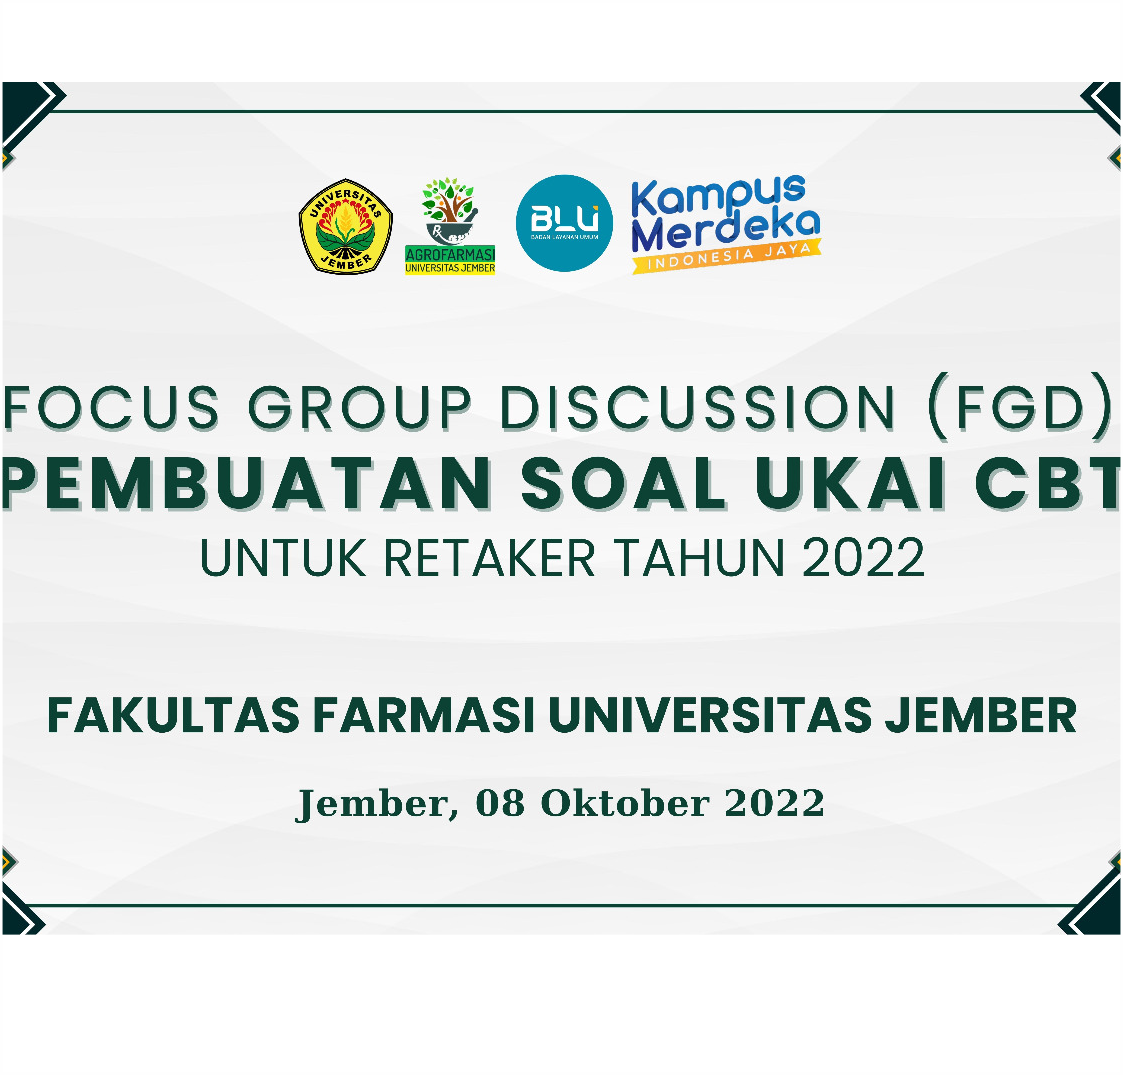 Fakultas Farmasi Universitas Jember Gandeng Alumni Pada Acara Focus Group Discussion (FGD) dan Pembuatan Soal Uji Kompetensi Apoteker Indonesia (UKAI) CBT